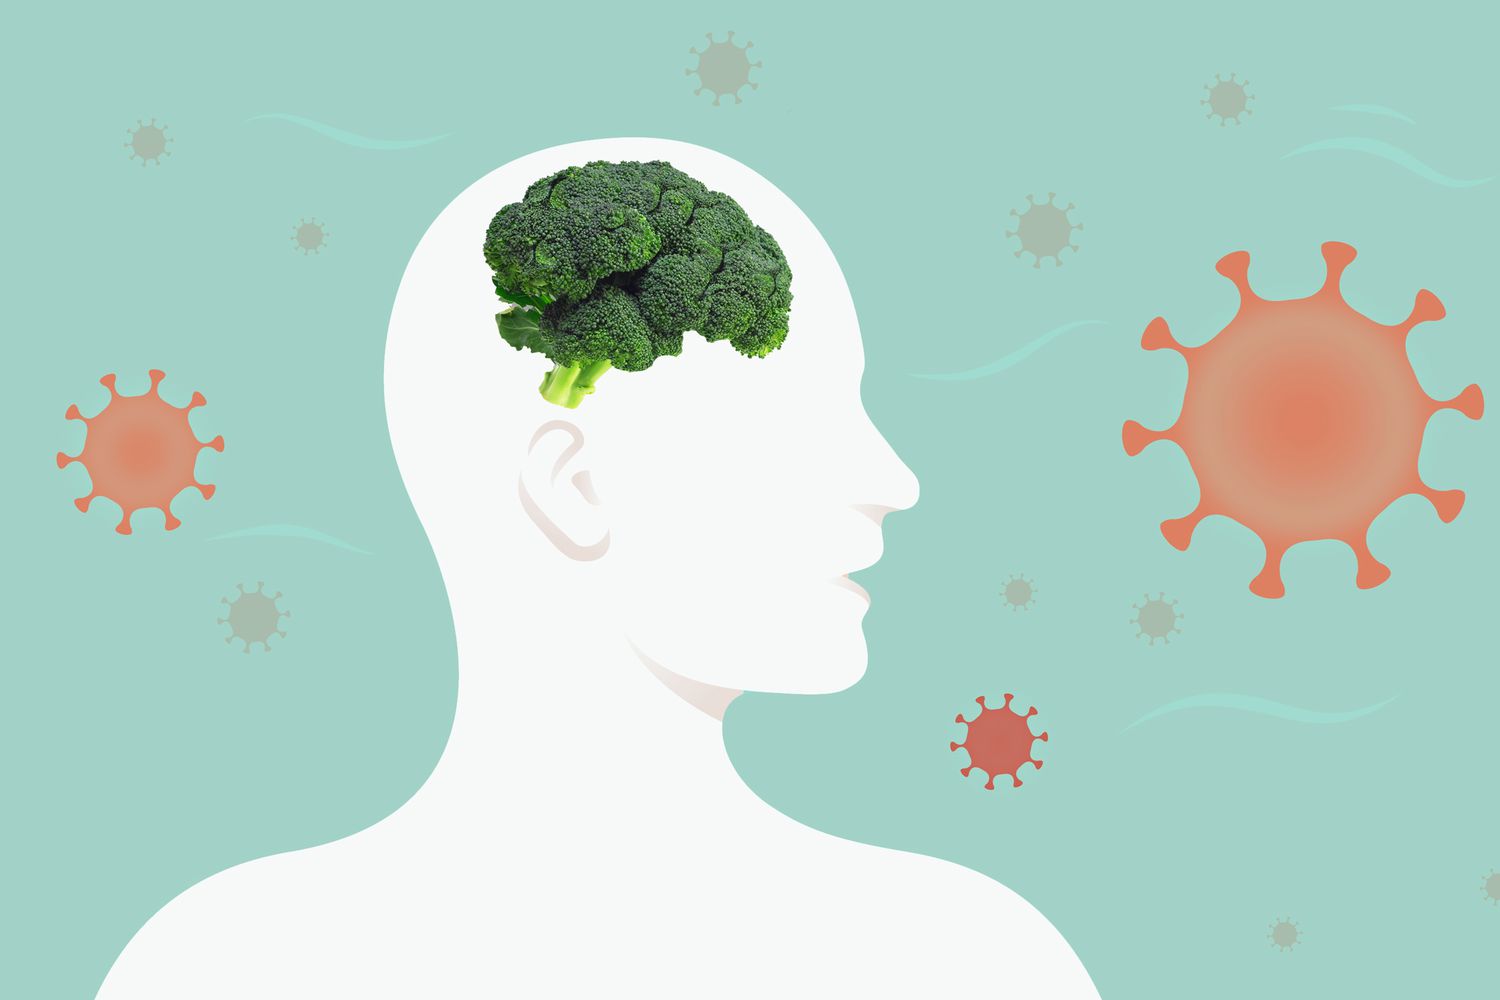 Un collage de moléculas covid flotando con la silueta de una persona con un cerebro de brócoli.